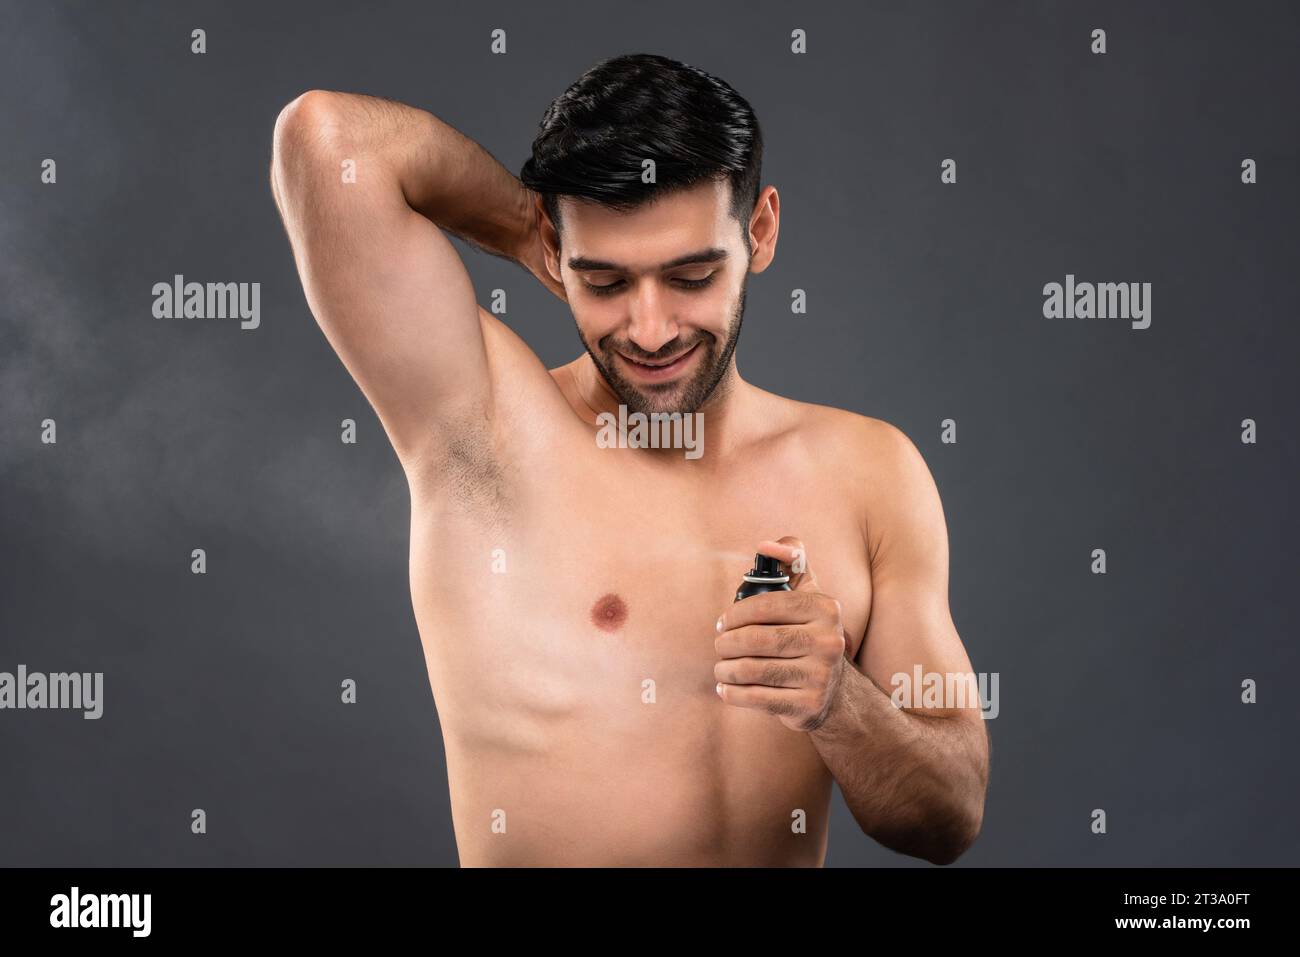 Torse nu bel homme caucasien utilisant un spray corporel déodorant en fond gris clair isolé photo de studio Banque D'Images